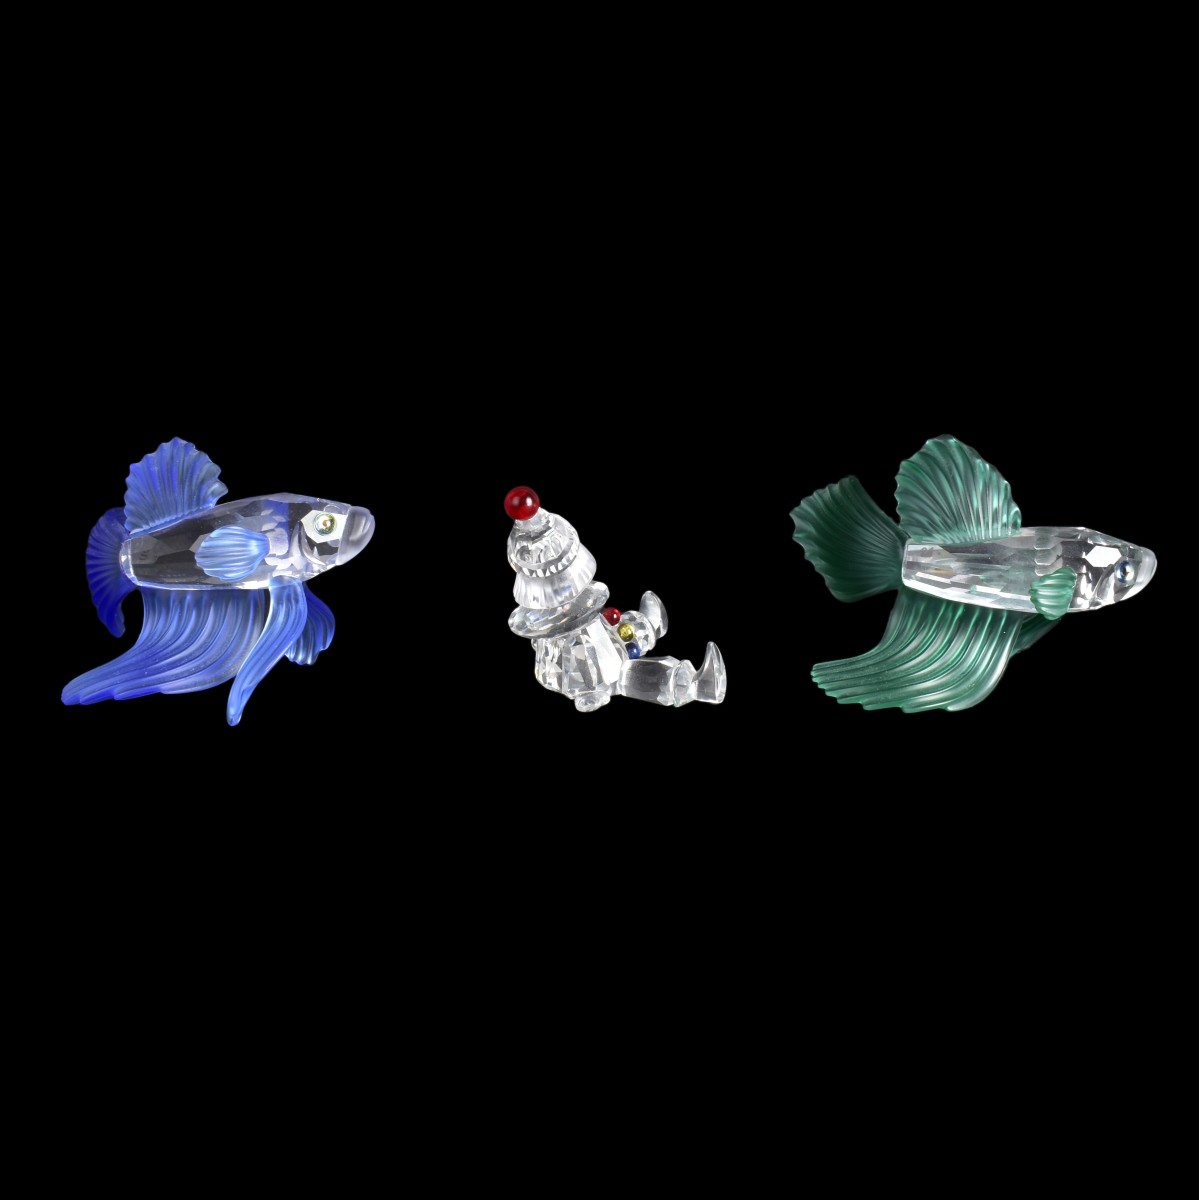 Three Swarovski Crystal Figurines